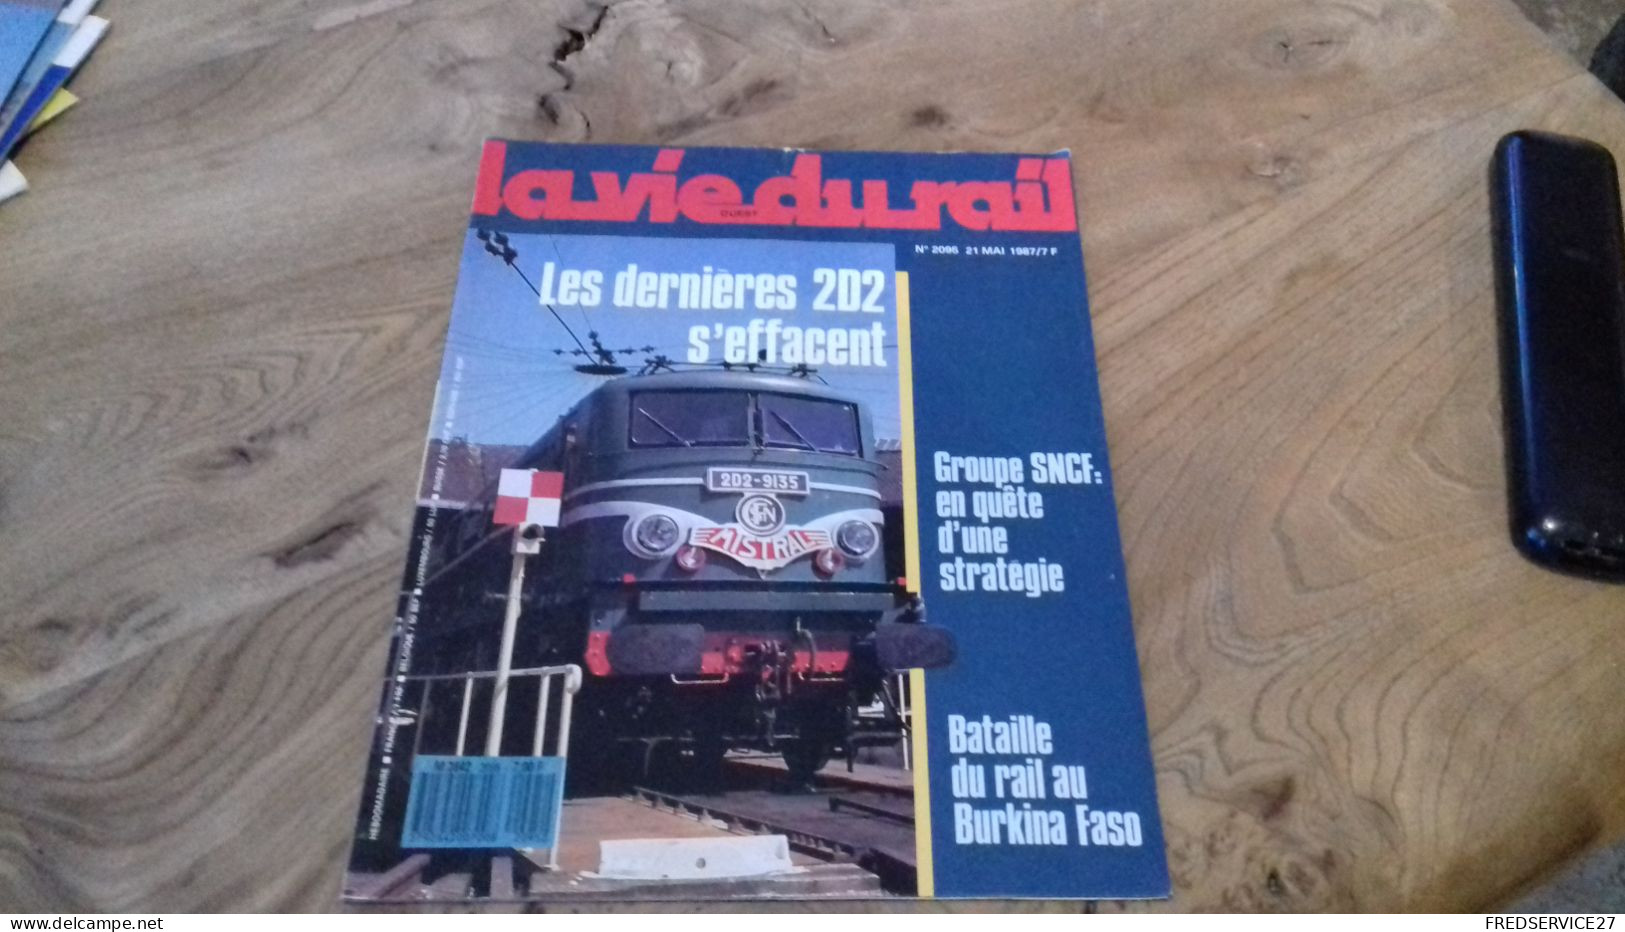 155/ LA VIE DU RAIL N° 2095  / JUIN 1987 / LES DERNIERES 2D2 S EFFACENT / GROUPE SNCF EN QUETE D UNE STRATEGIE - Trenes